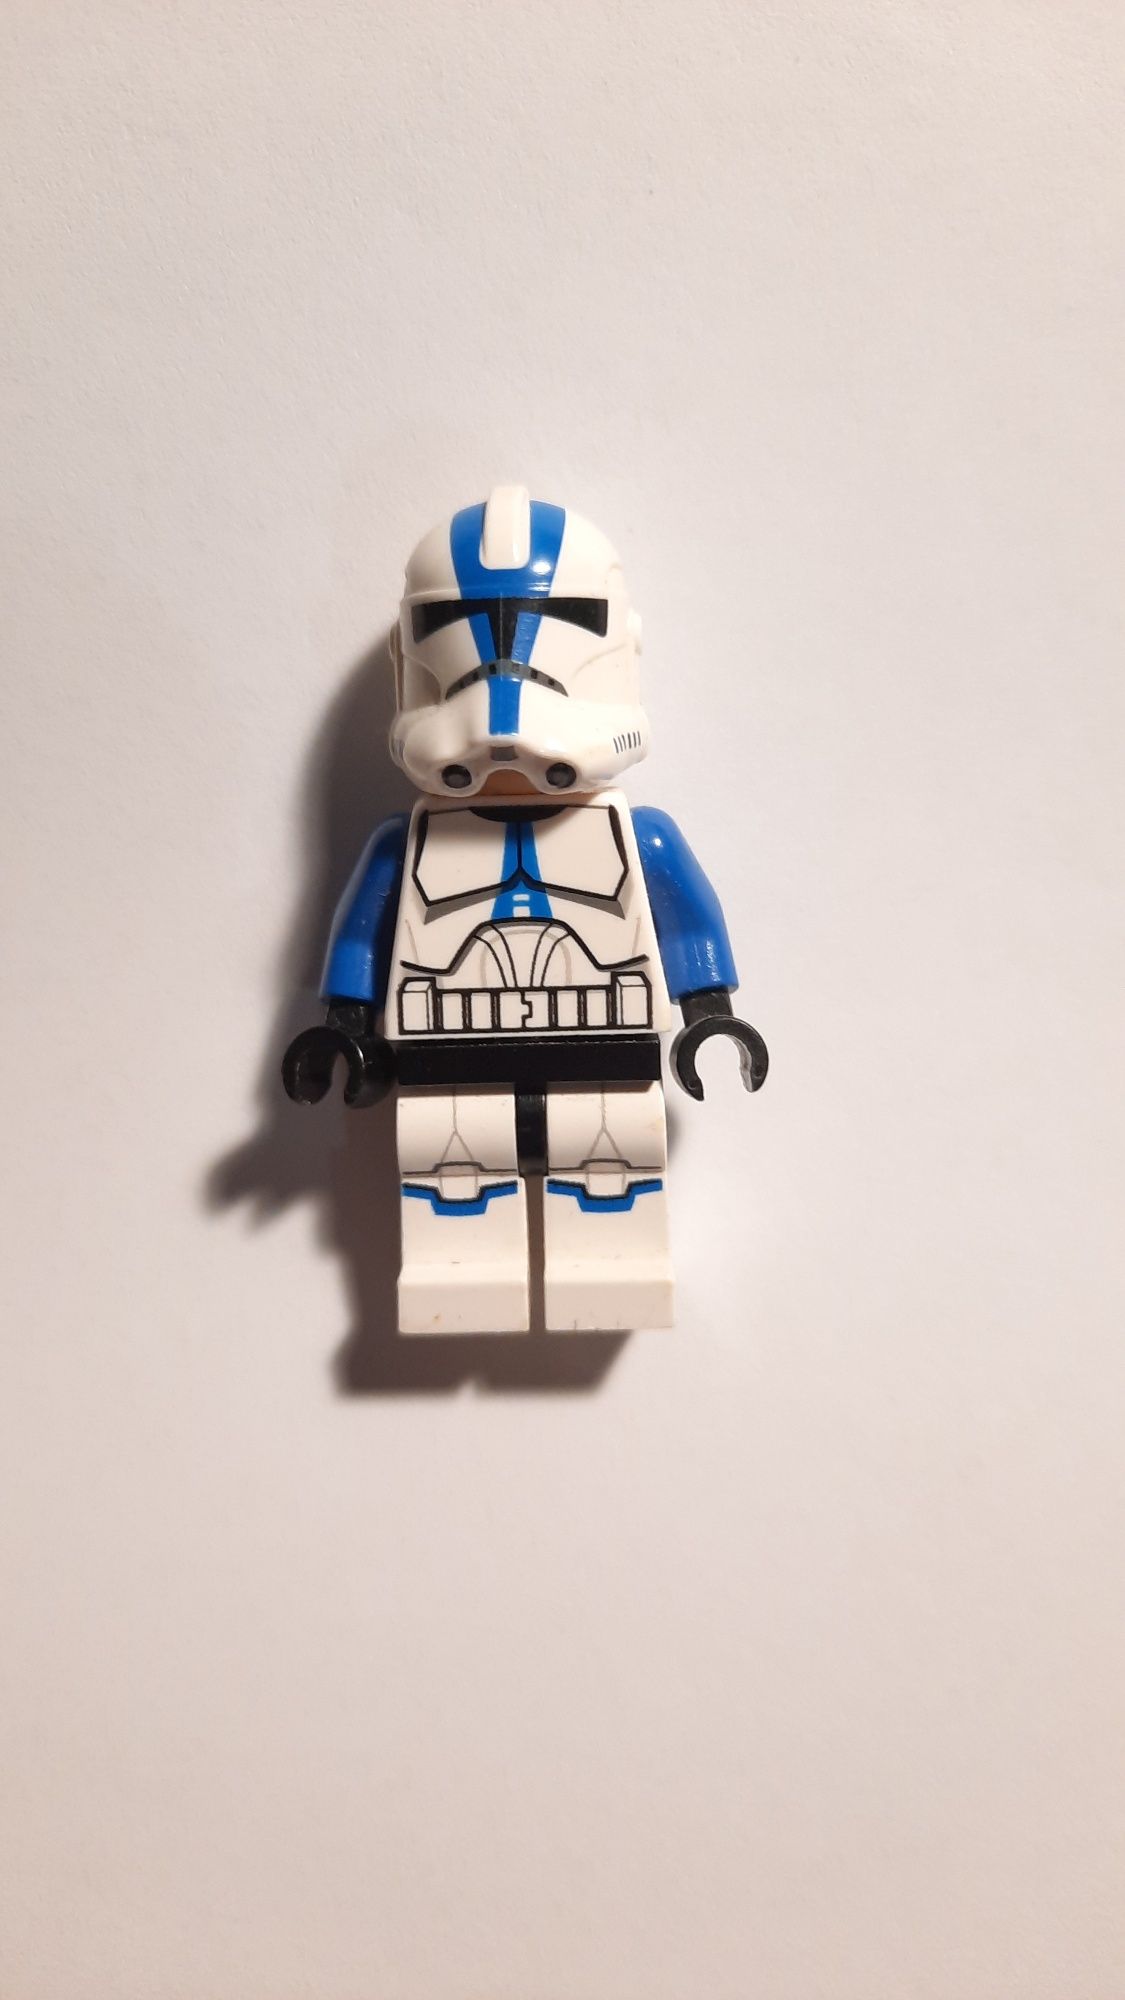 Klon z 501-szego legionu - Minifigurka Lego Star Wars